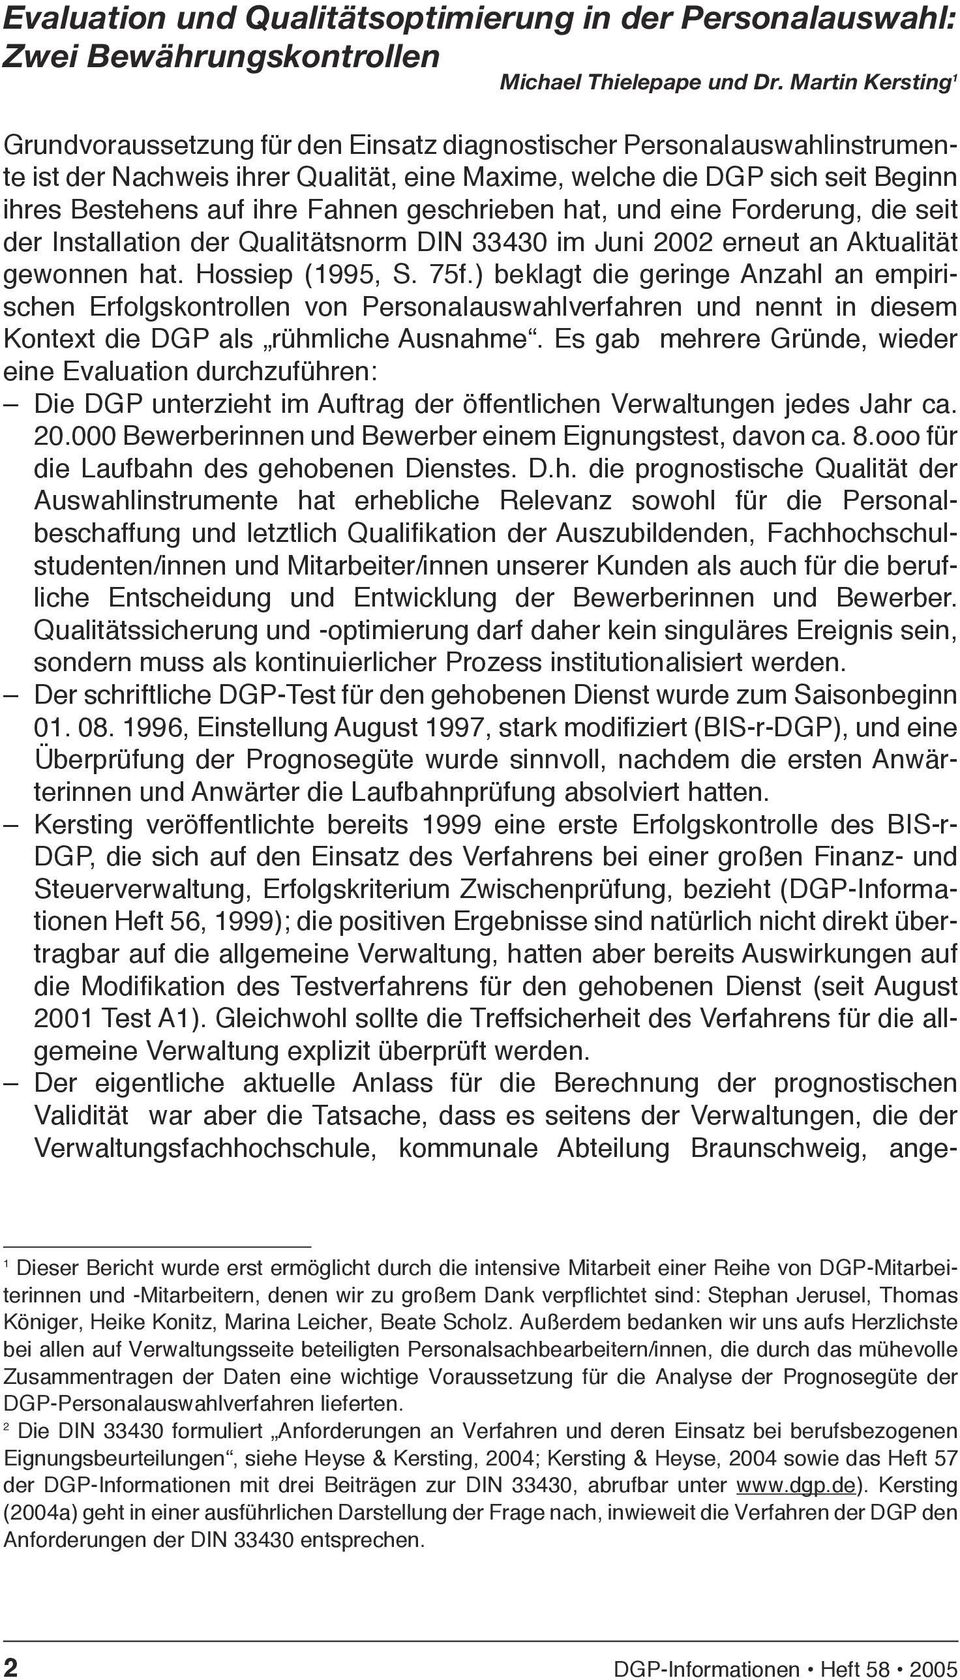 Fahnen geschrieben hat, und eine Forderung, die seit der Installation der Qualitätsnorm DIN 33430 im Juni 2002 erneut an Aktualität gewonnen hat. Hossiep (1995, S. 75f.